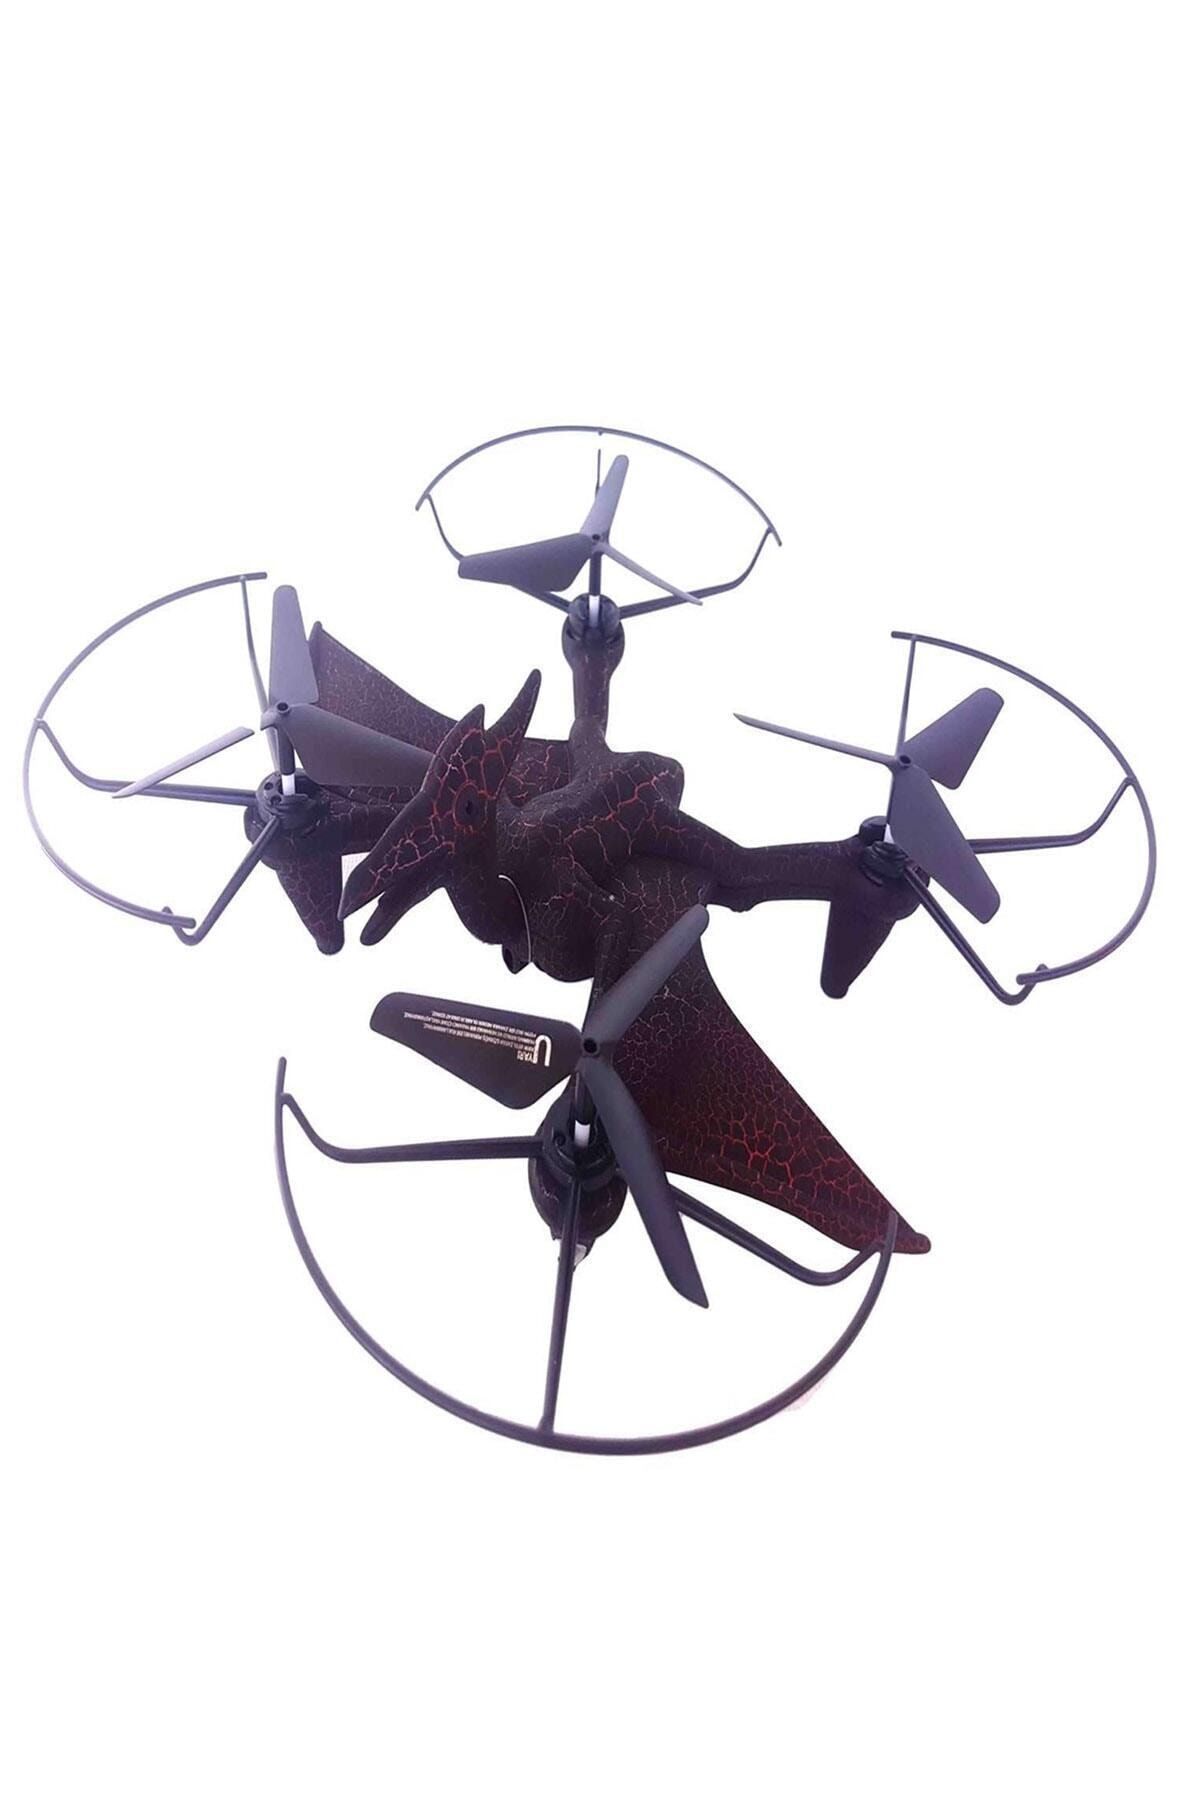 Universal Oyuncak Uçan Dinazor Drone Şarjlı Uzaktan Kumandalı Drone Uçan H6